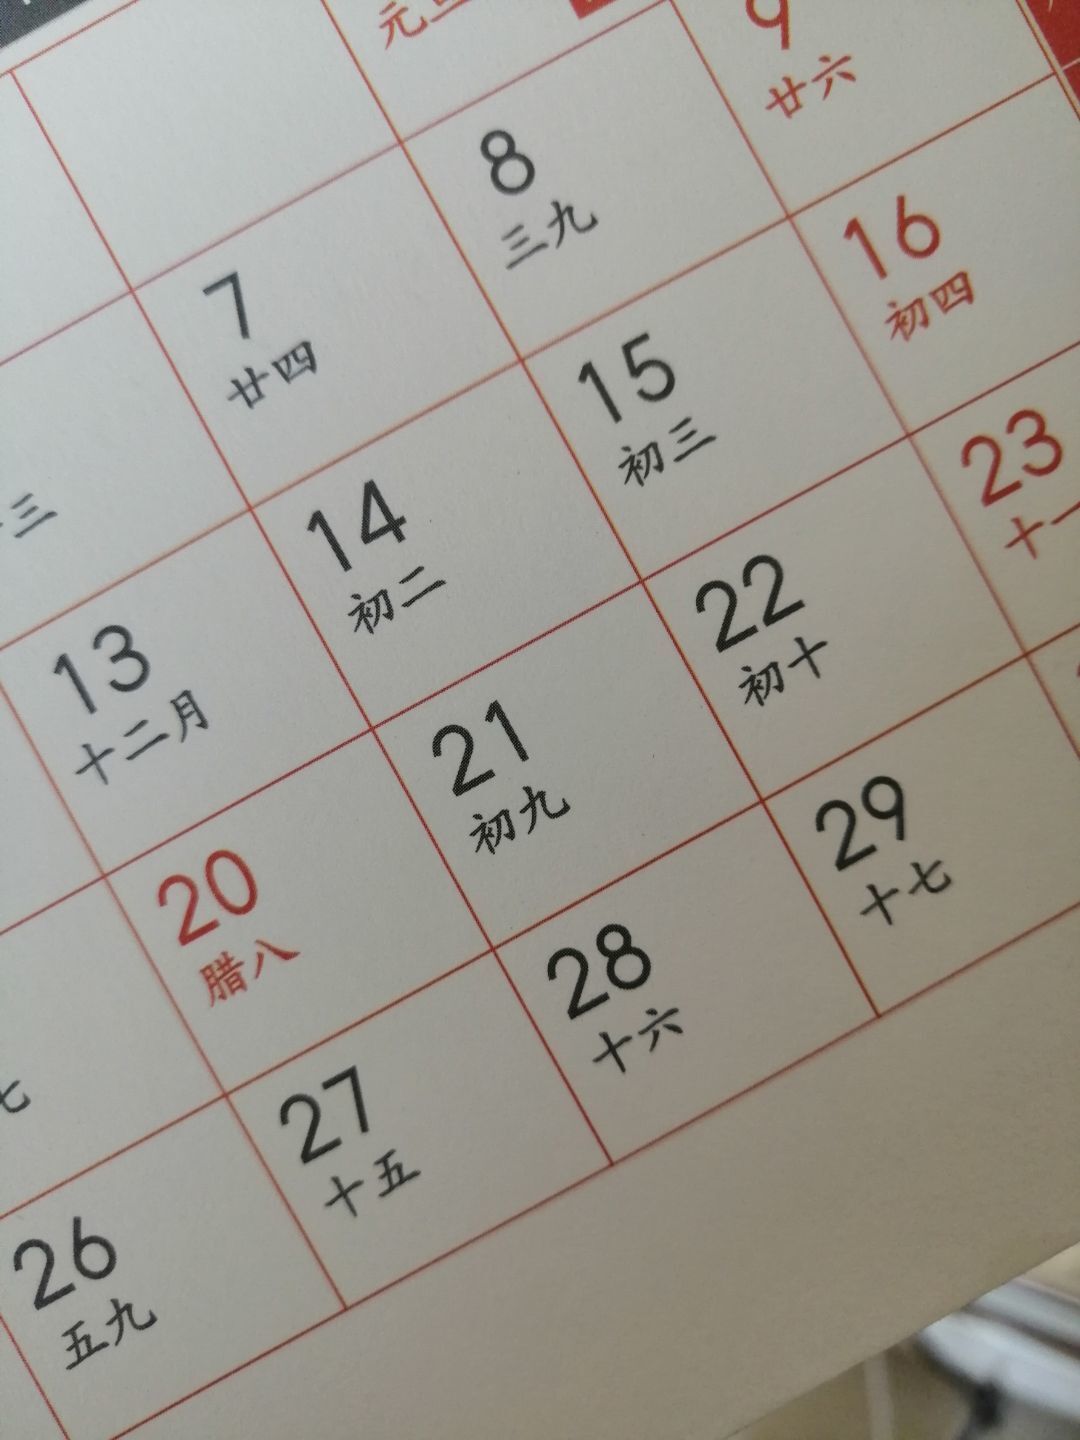 2023年闰二月是几月几号？为什么会有闰月？闰月是什么意思？